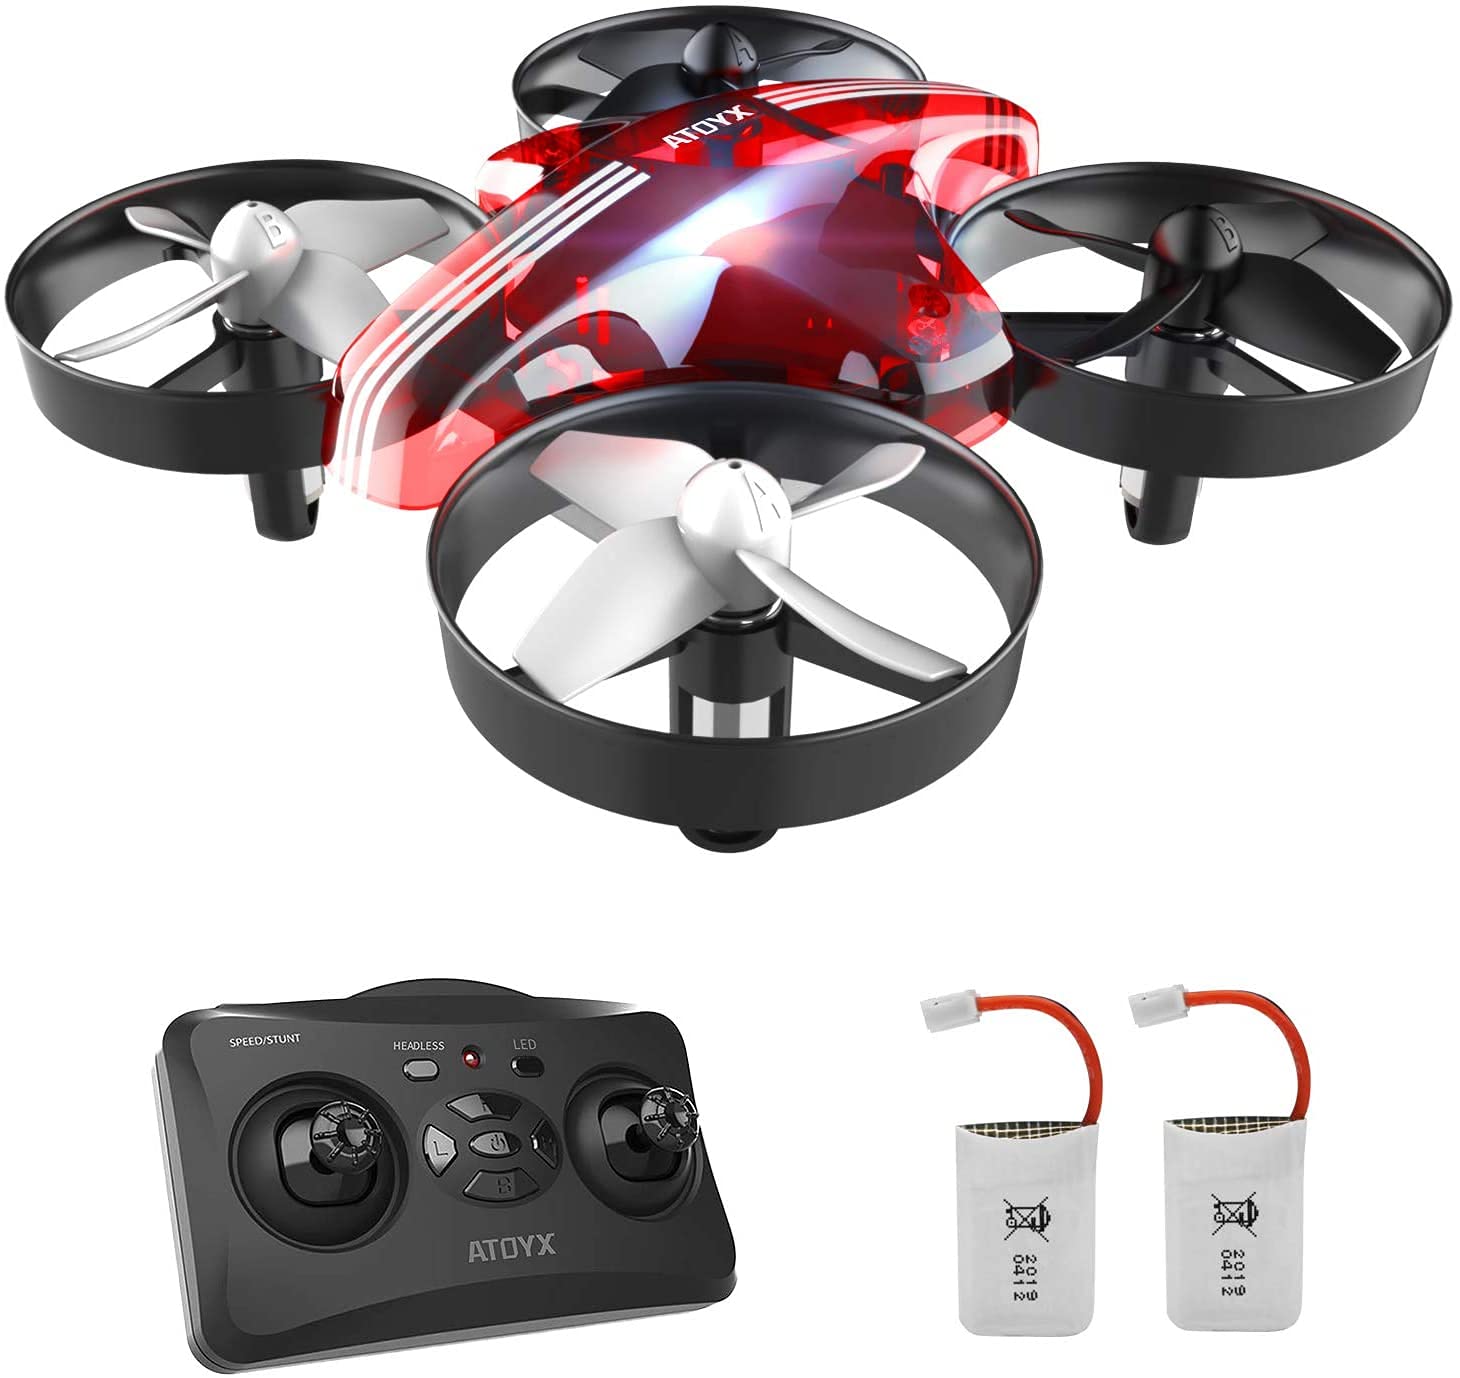 ATOYX Mini Drohne für Kinder und Anfänger, RC Drone, Geschenke zum kindertag,Quadrocopter Mini Helikopter mit Höhehalten, Kopflos Modus, 3D Flips, EIN-Tasten-Rückkehr, 2 Batteries von ATOYX